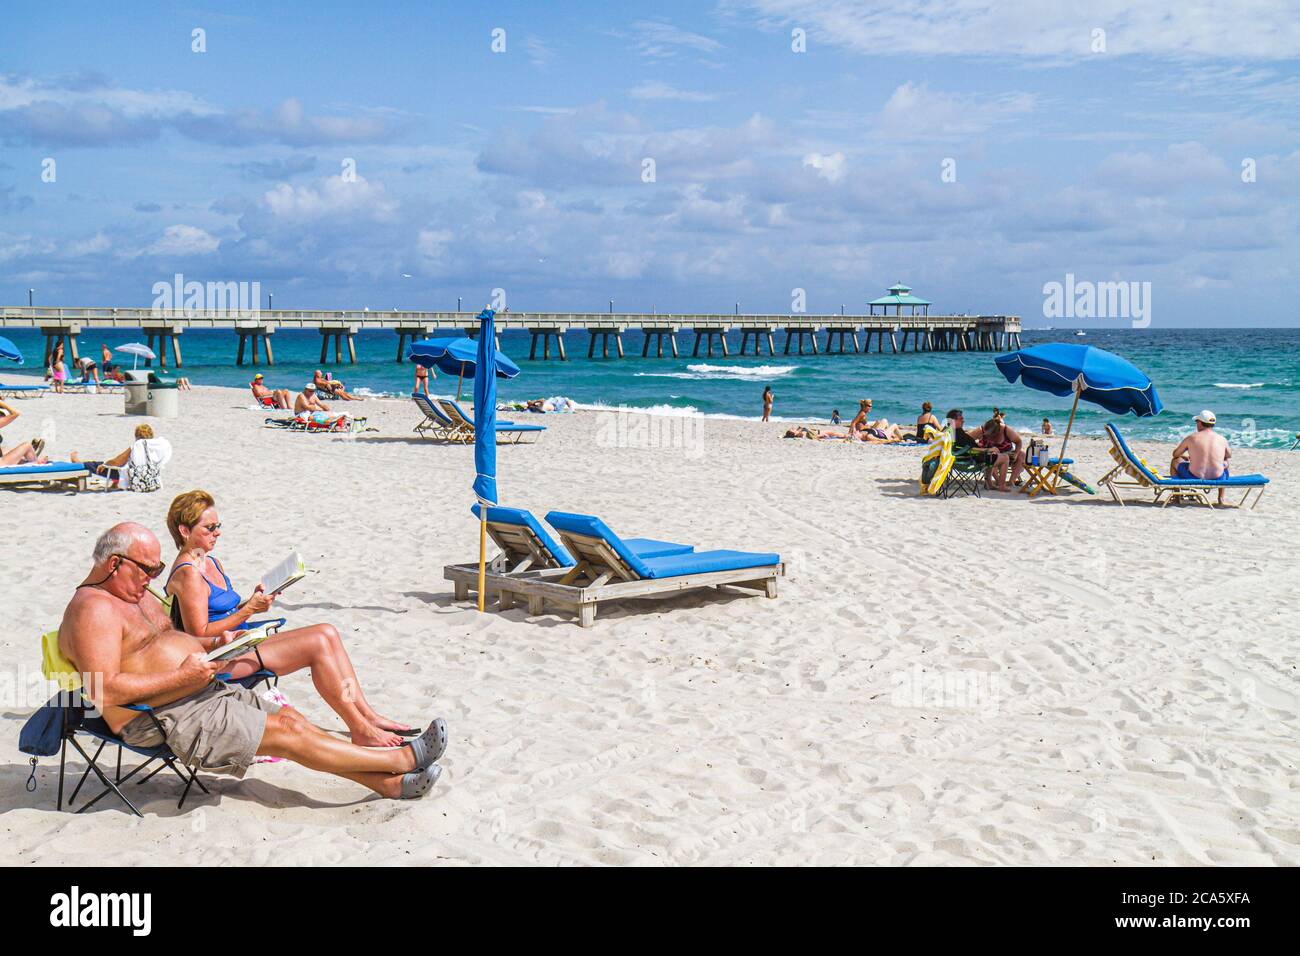 Deerfield Beach Florida, sable, public, océan Atlantique, côte d'eau, rivage, surf, bains de soleil, adultes homme hommes hommes, femme femme femme dame, couple, parapluie Banque D'Images